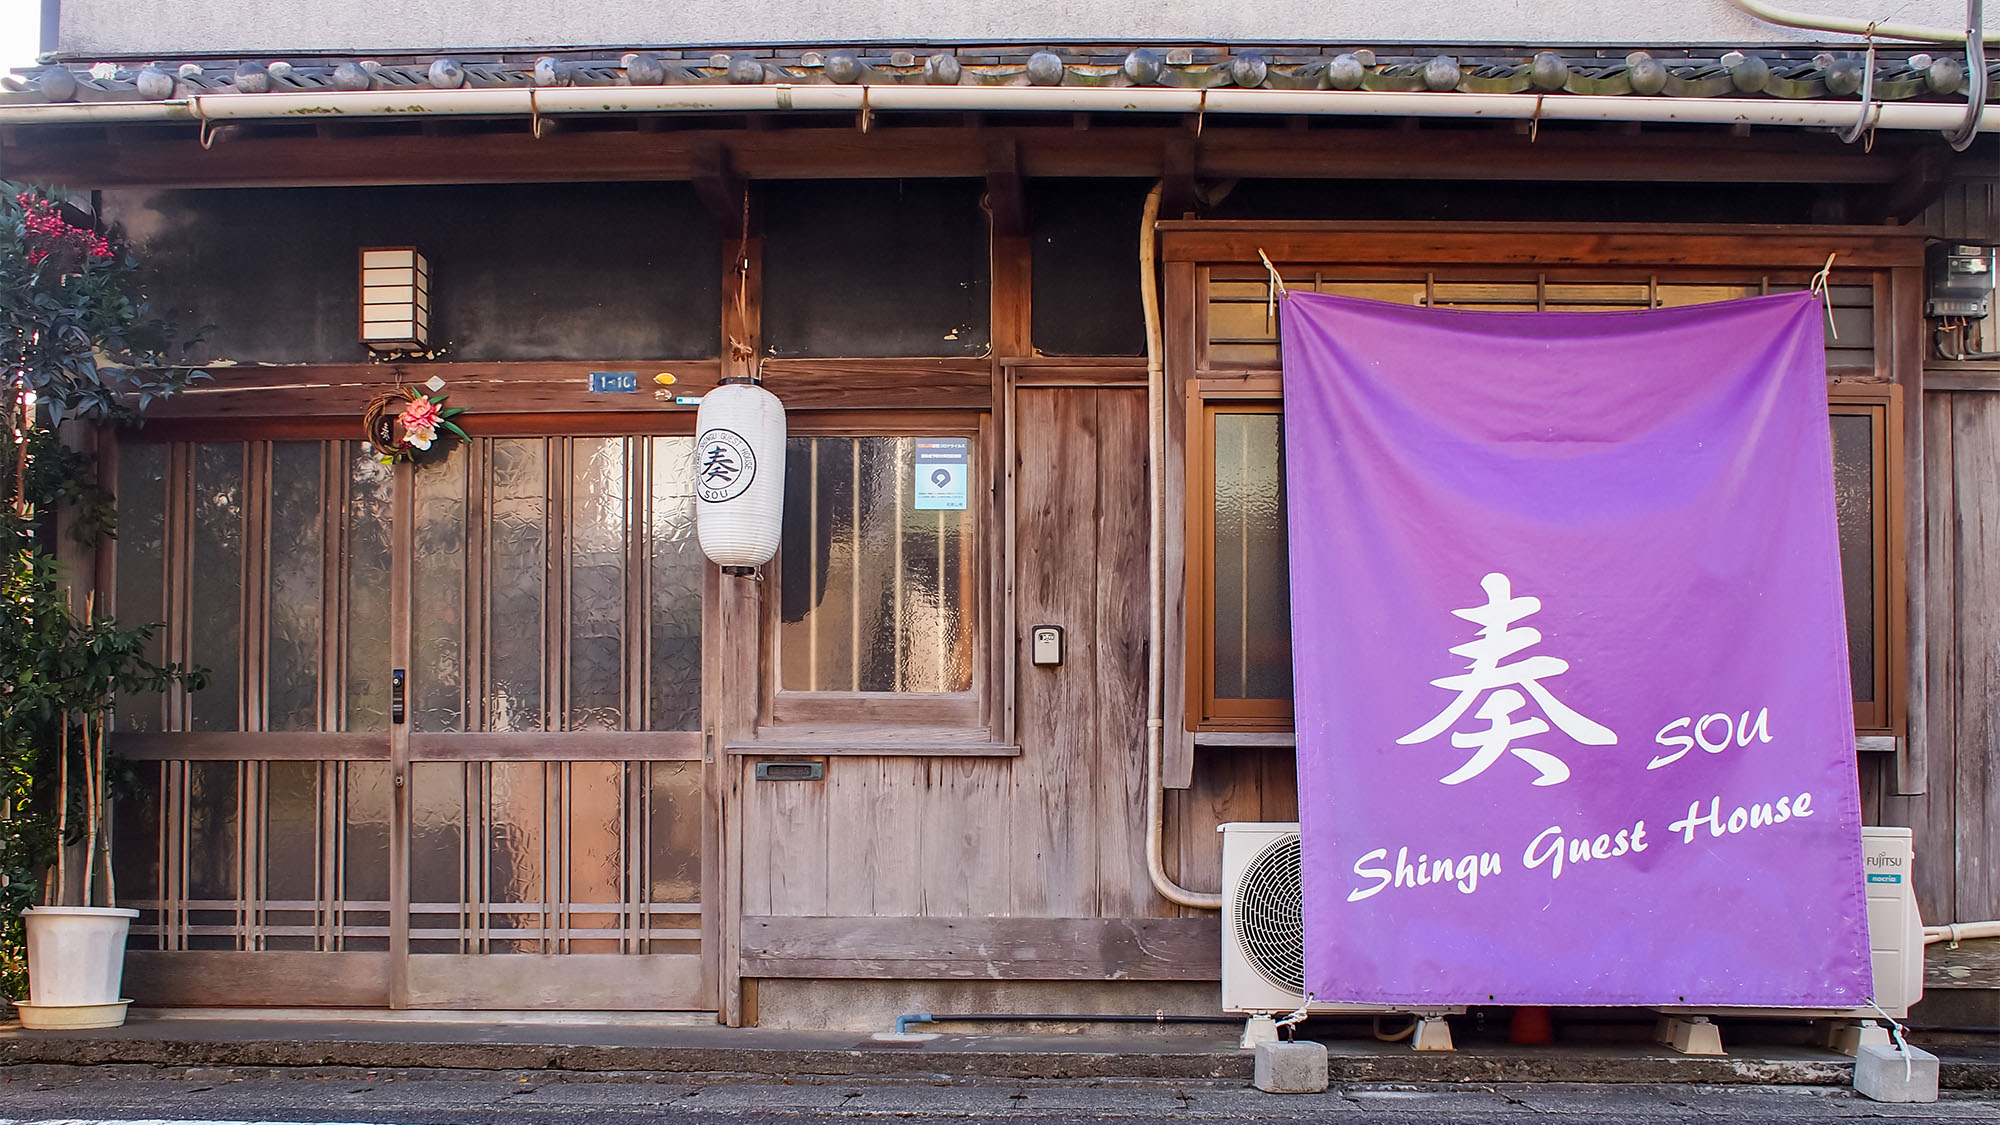 Shingu Guest House Sou